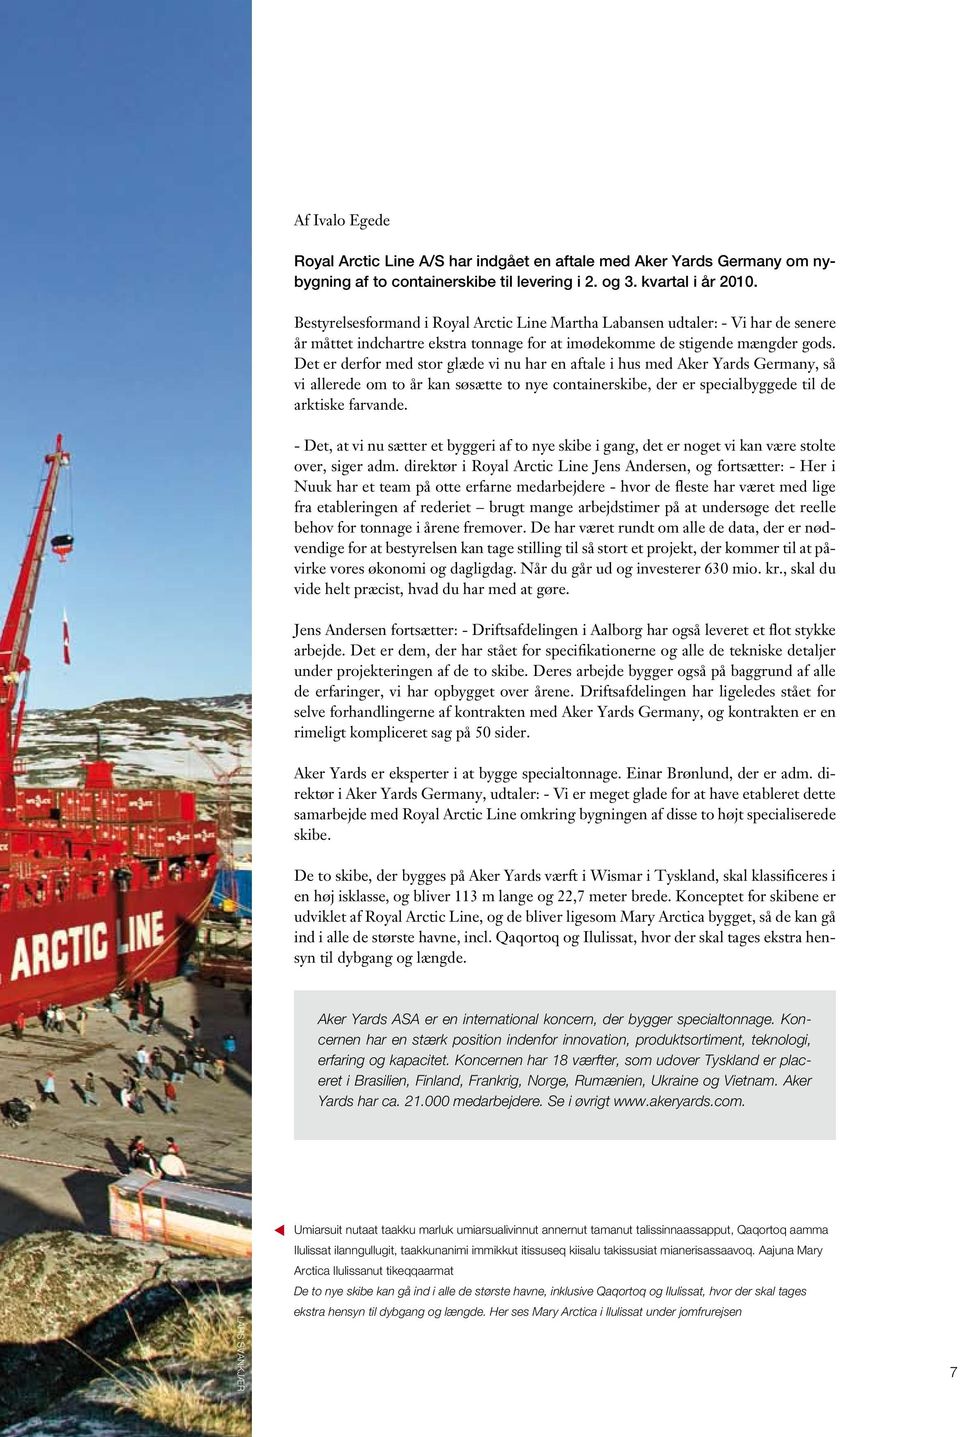 Det er derfor med stor glæde vi nu har en aftale i hus med Aker Yards Germany, så vi allerede om to år kan søsætte to nye containerskibe, der er specialbyggede til de arktiske farvande.